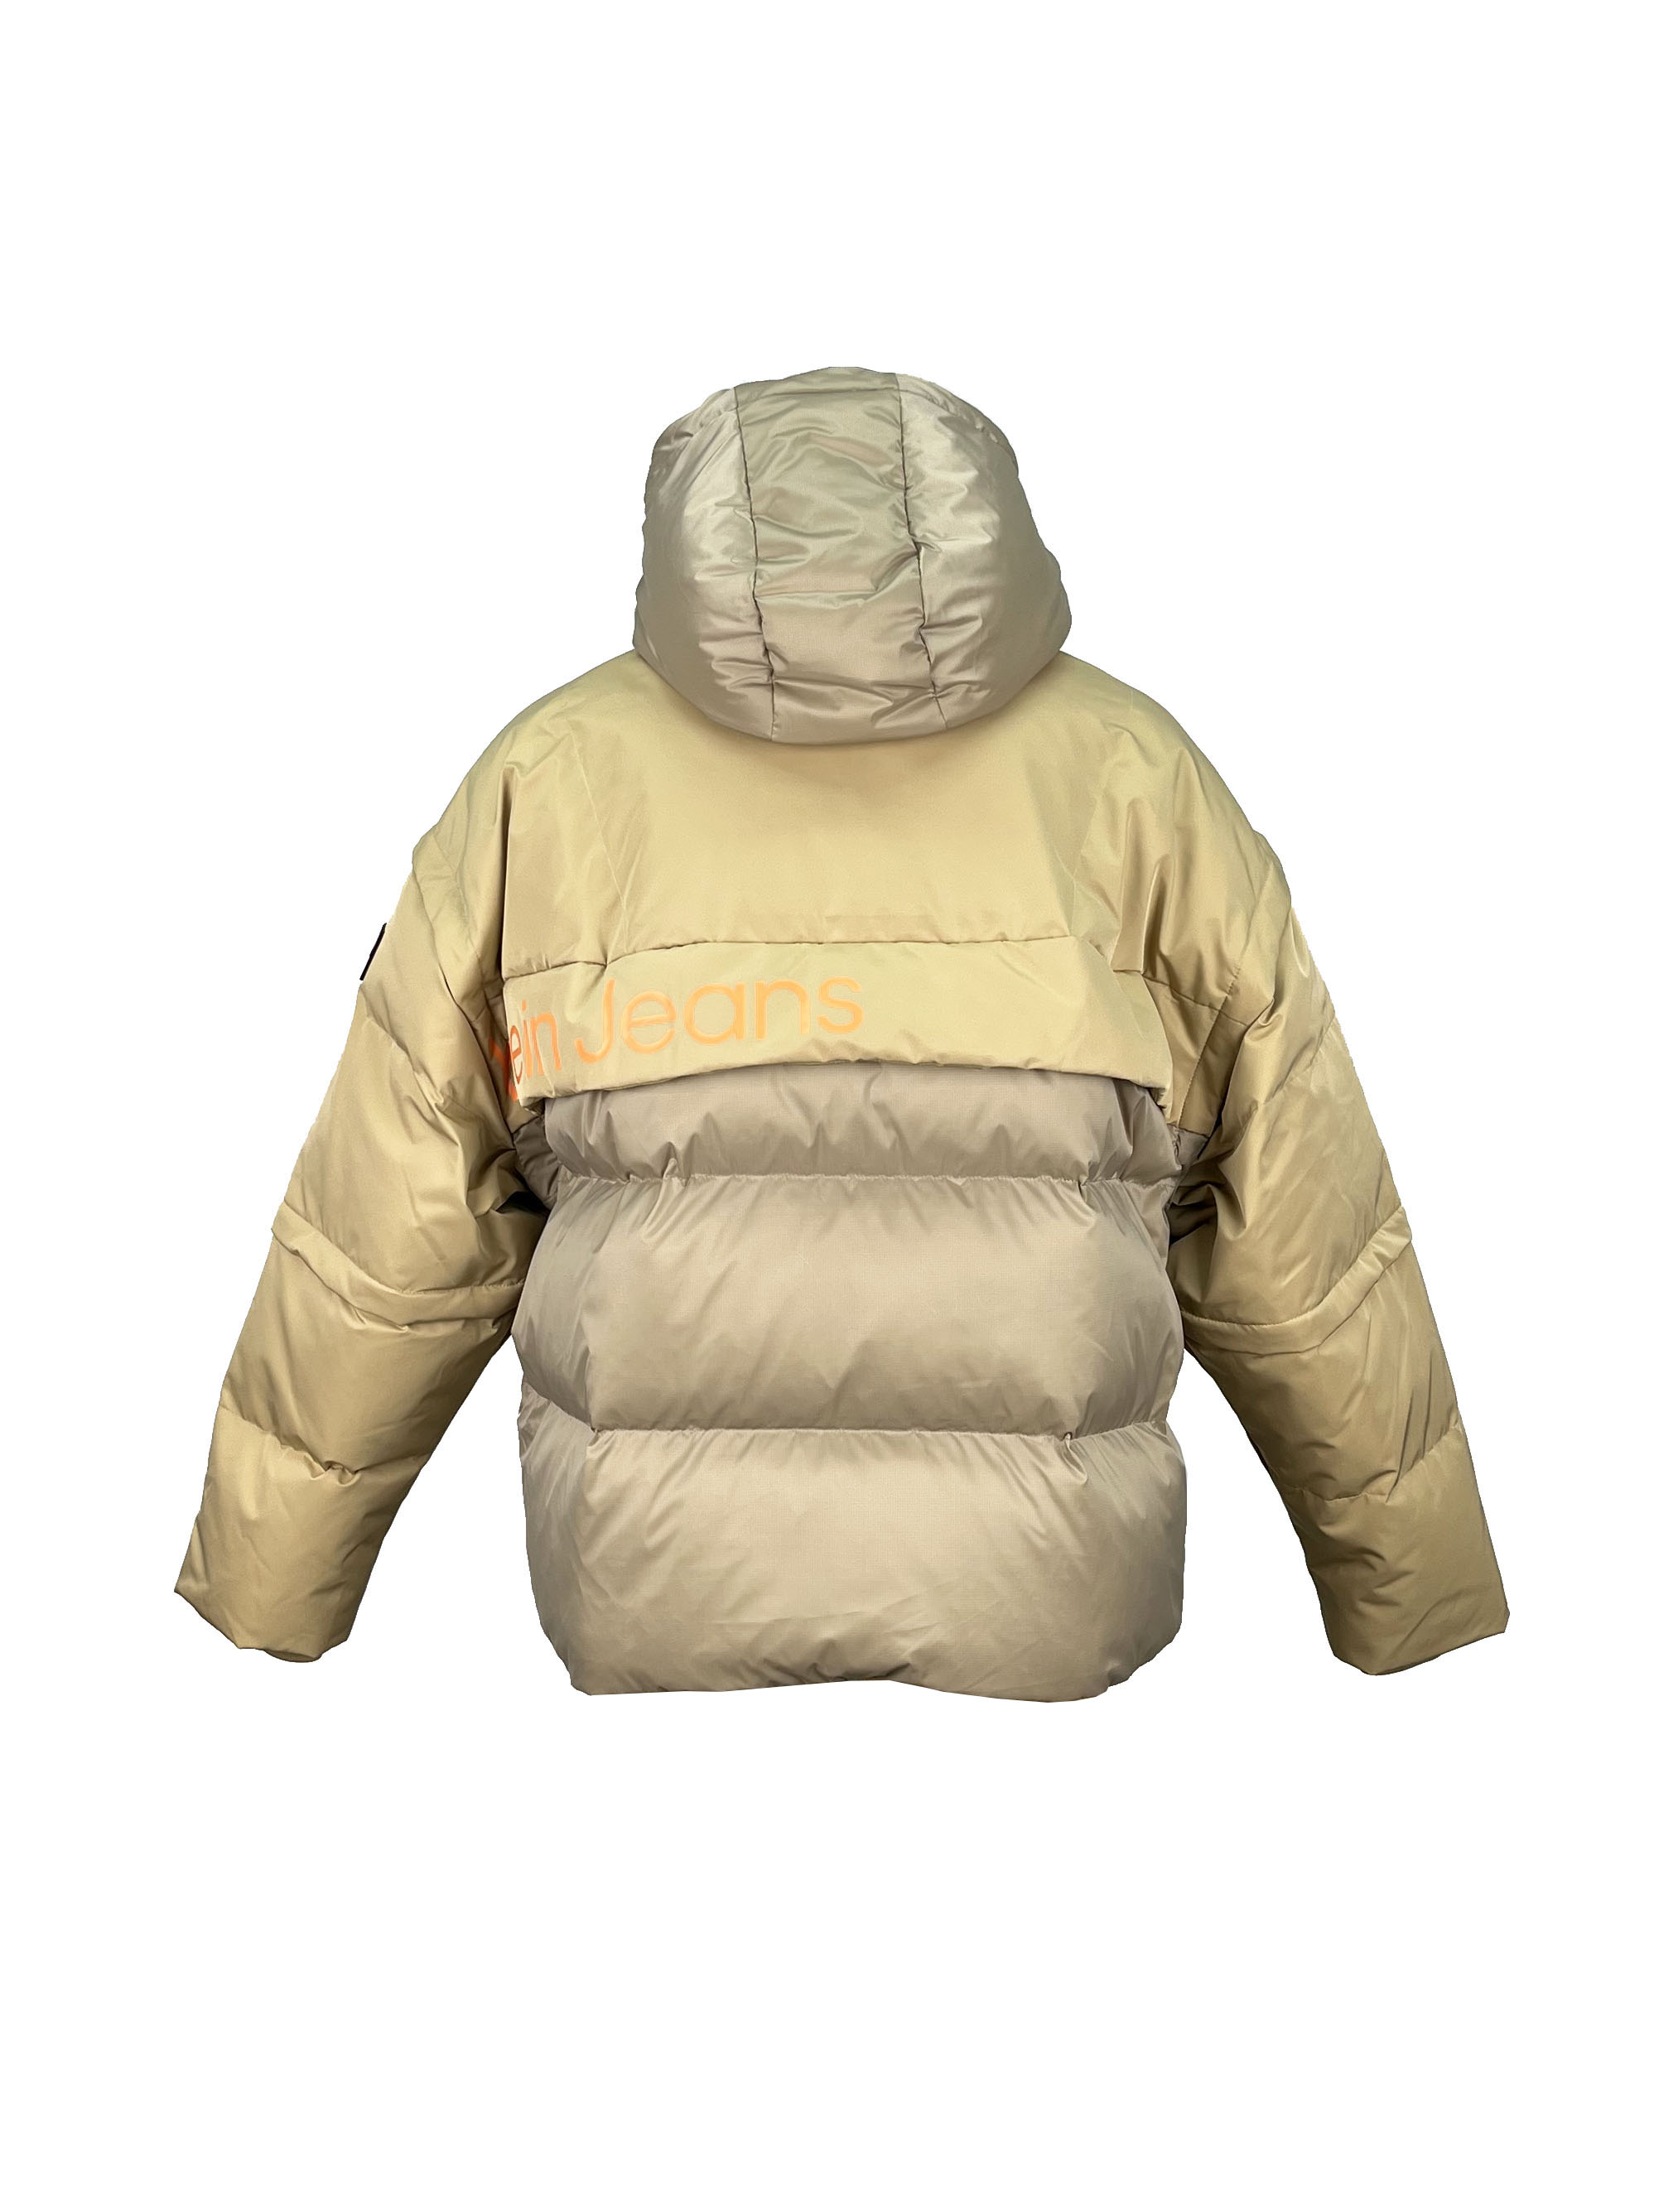 5.padded jacket.(3)